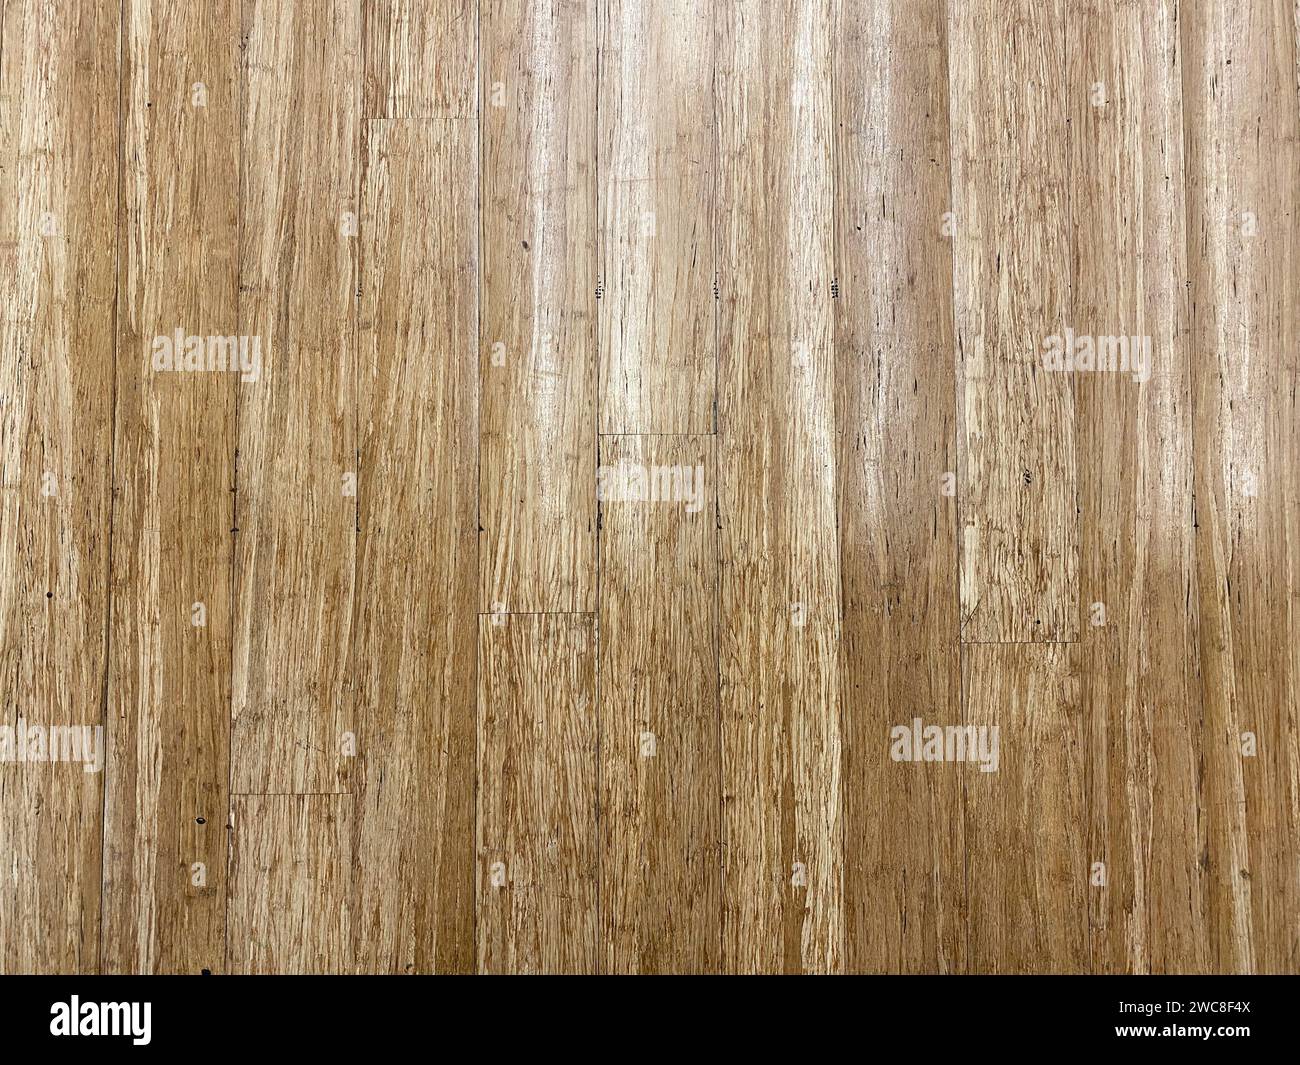 Horizontale Holztäfelung für ein Gefühl von Raum und Offenheit in Ihrem Design-Layout. Stockfoto